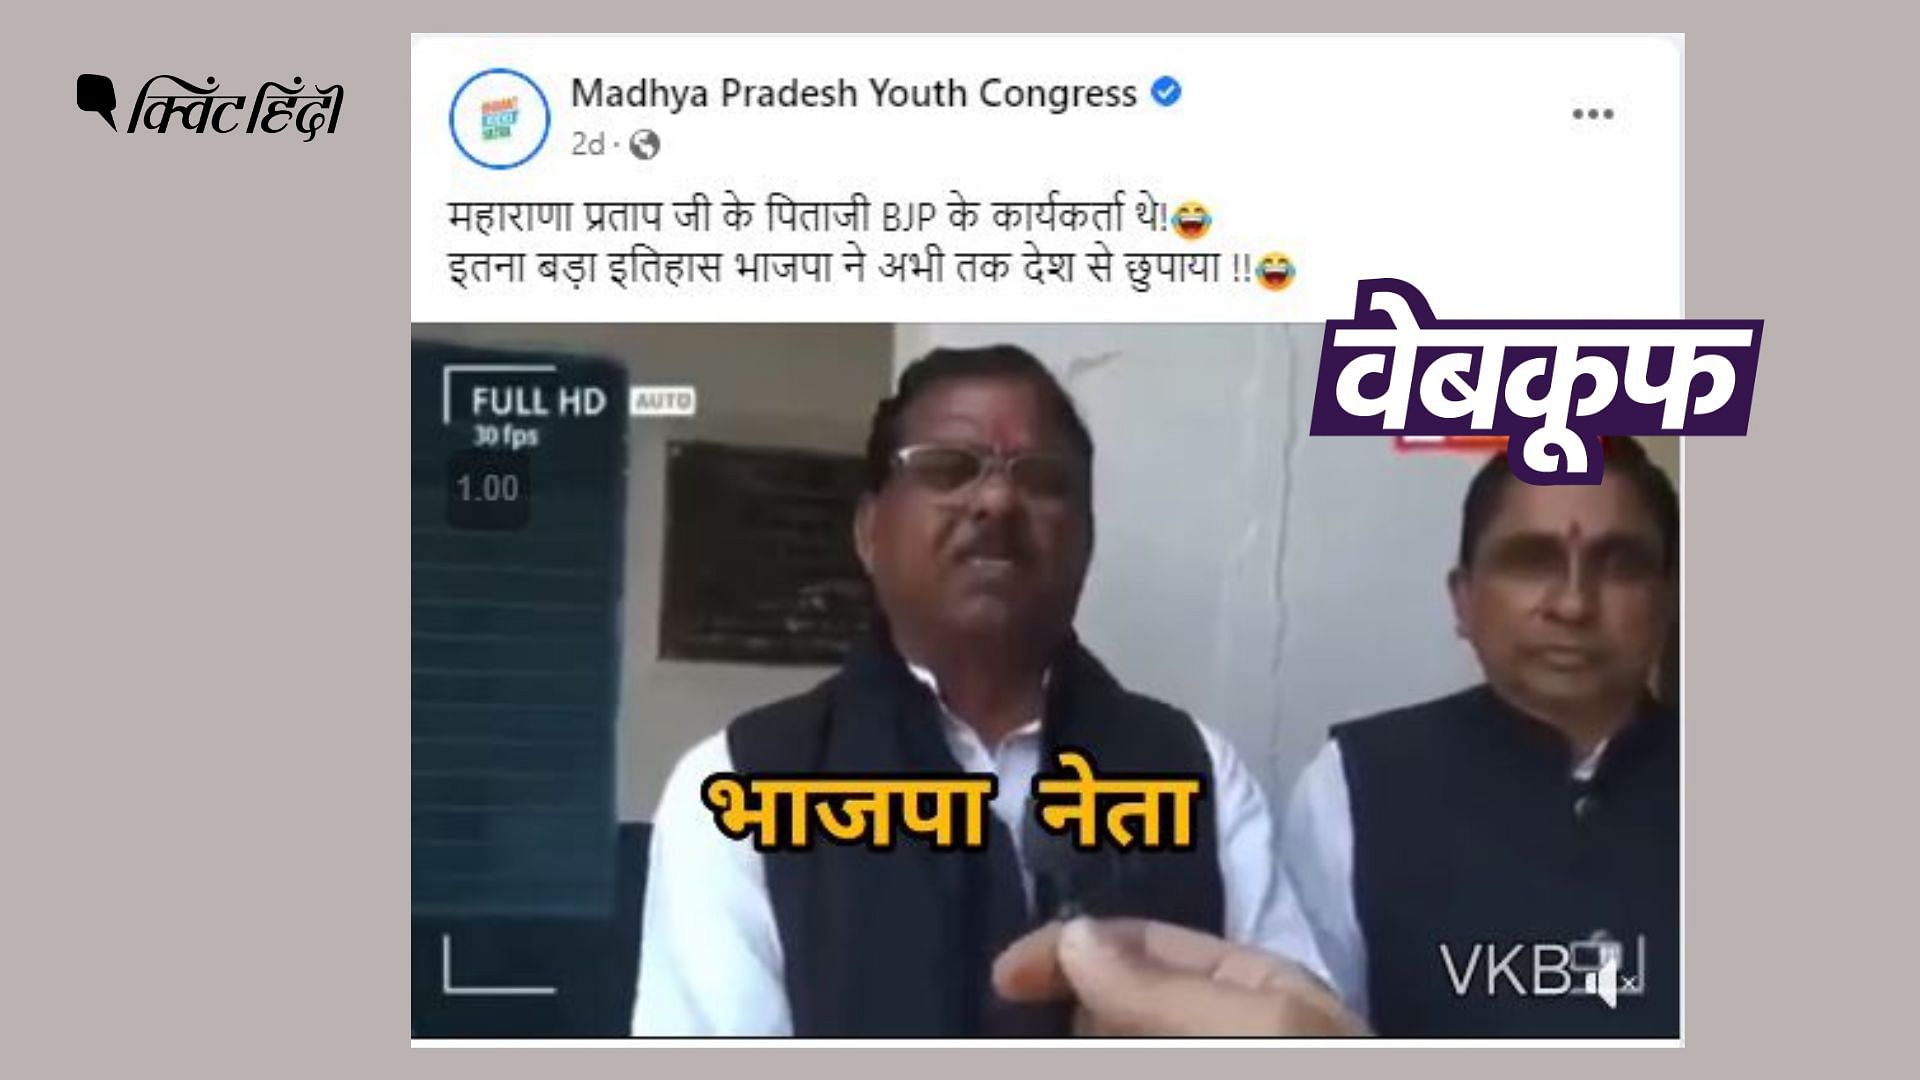 <div class="paragraphs"><p>वीडियो में शख्स को ये कहते हुए सुना जा सकता है कि महाराणा प्रताप के पिता BJP वर्कर थे.</p></div>